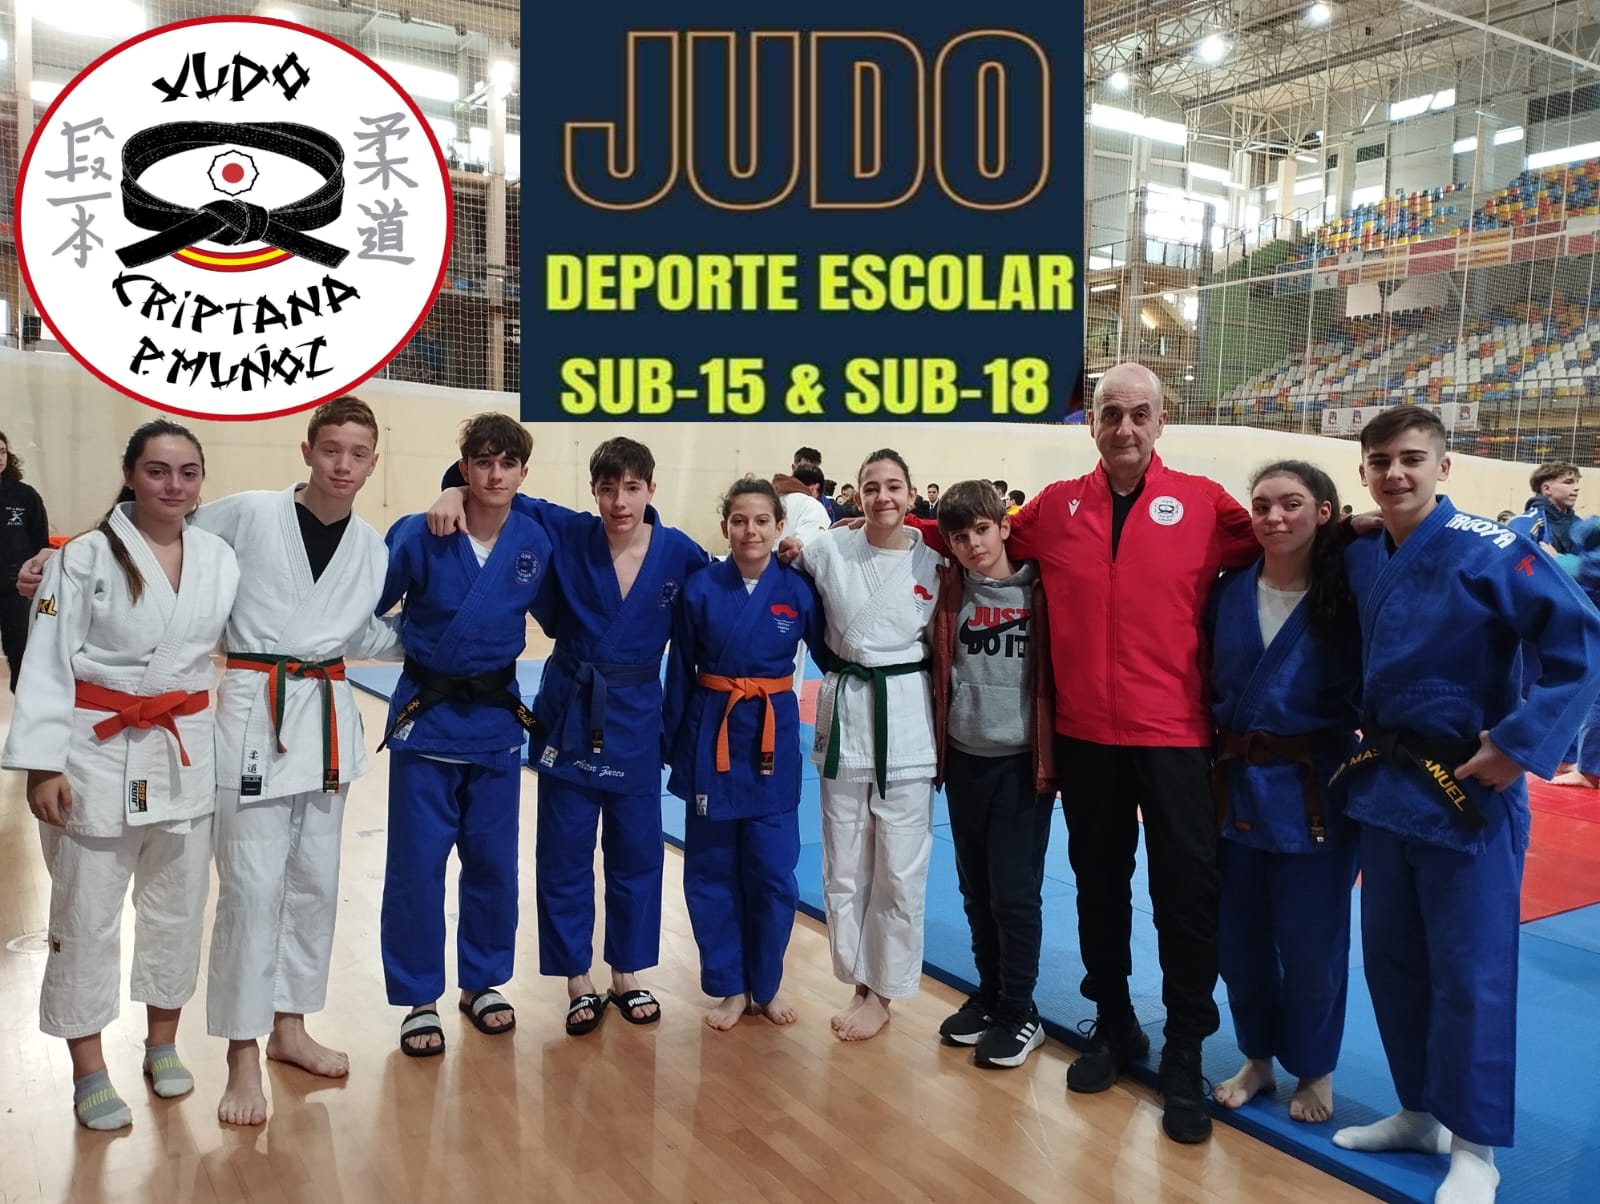 Medallas de oro para las judokas Laura Herrera y Ruth Beteta del C.D. Criptana y Pedro Muñoz